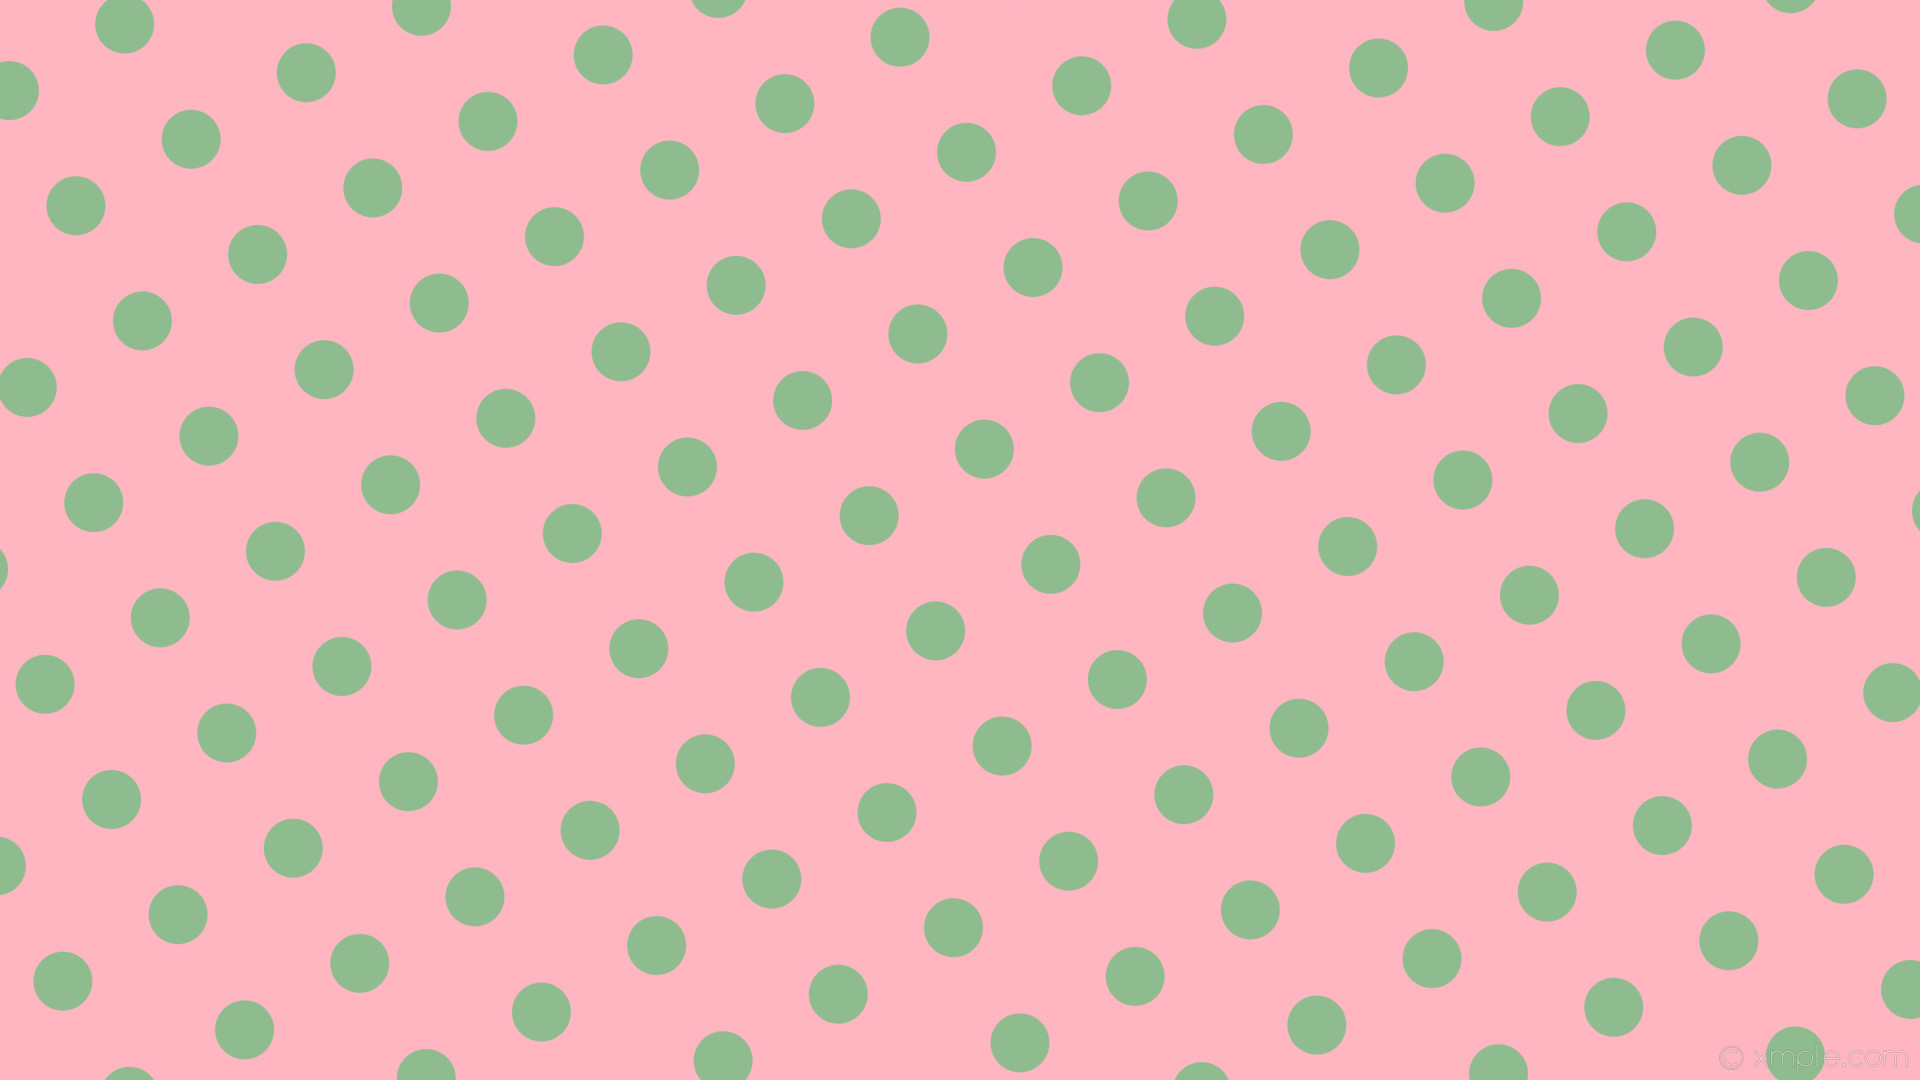 wallpaper pink polka dots green spots light pink dark sea green #ffb6c1  #8fbc8f 210